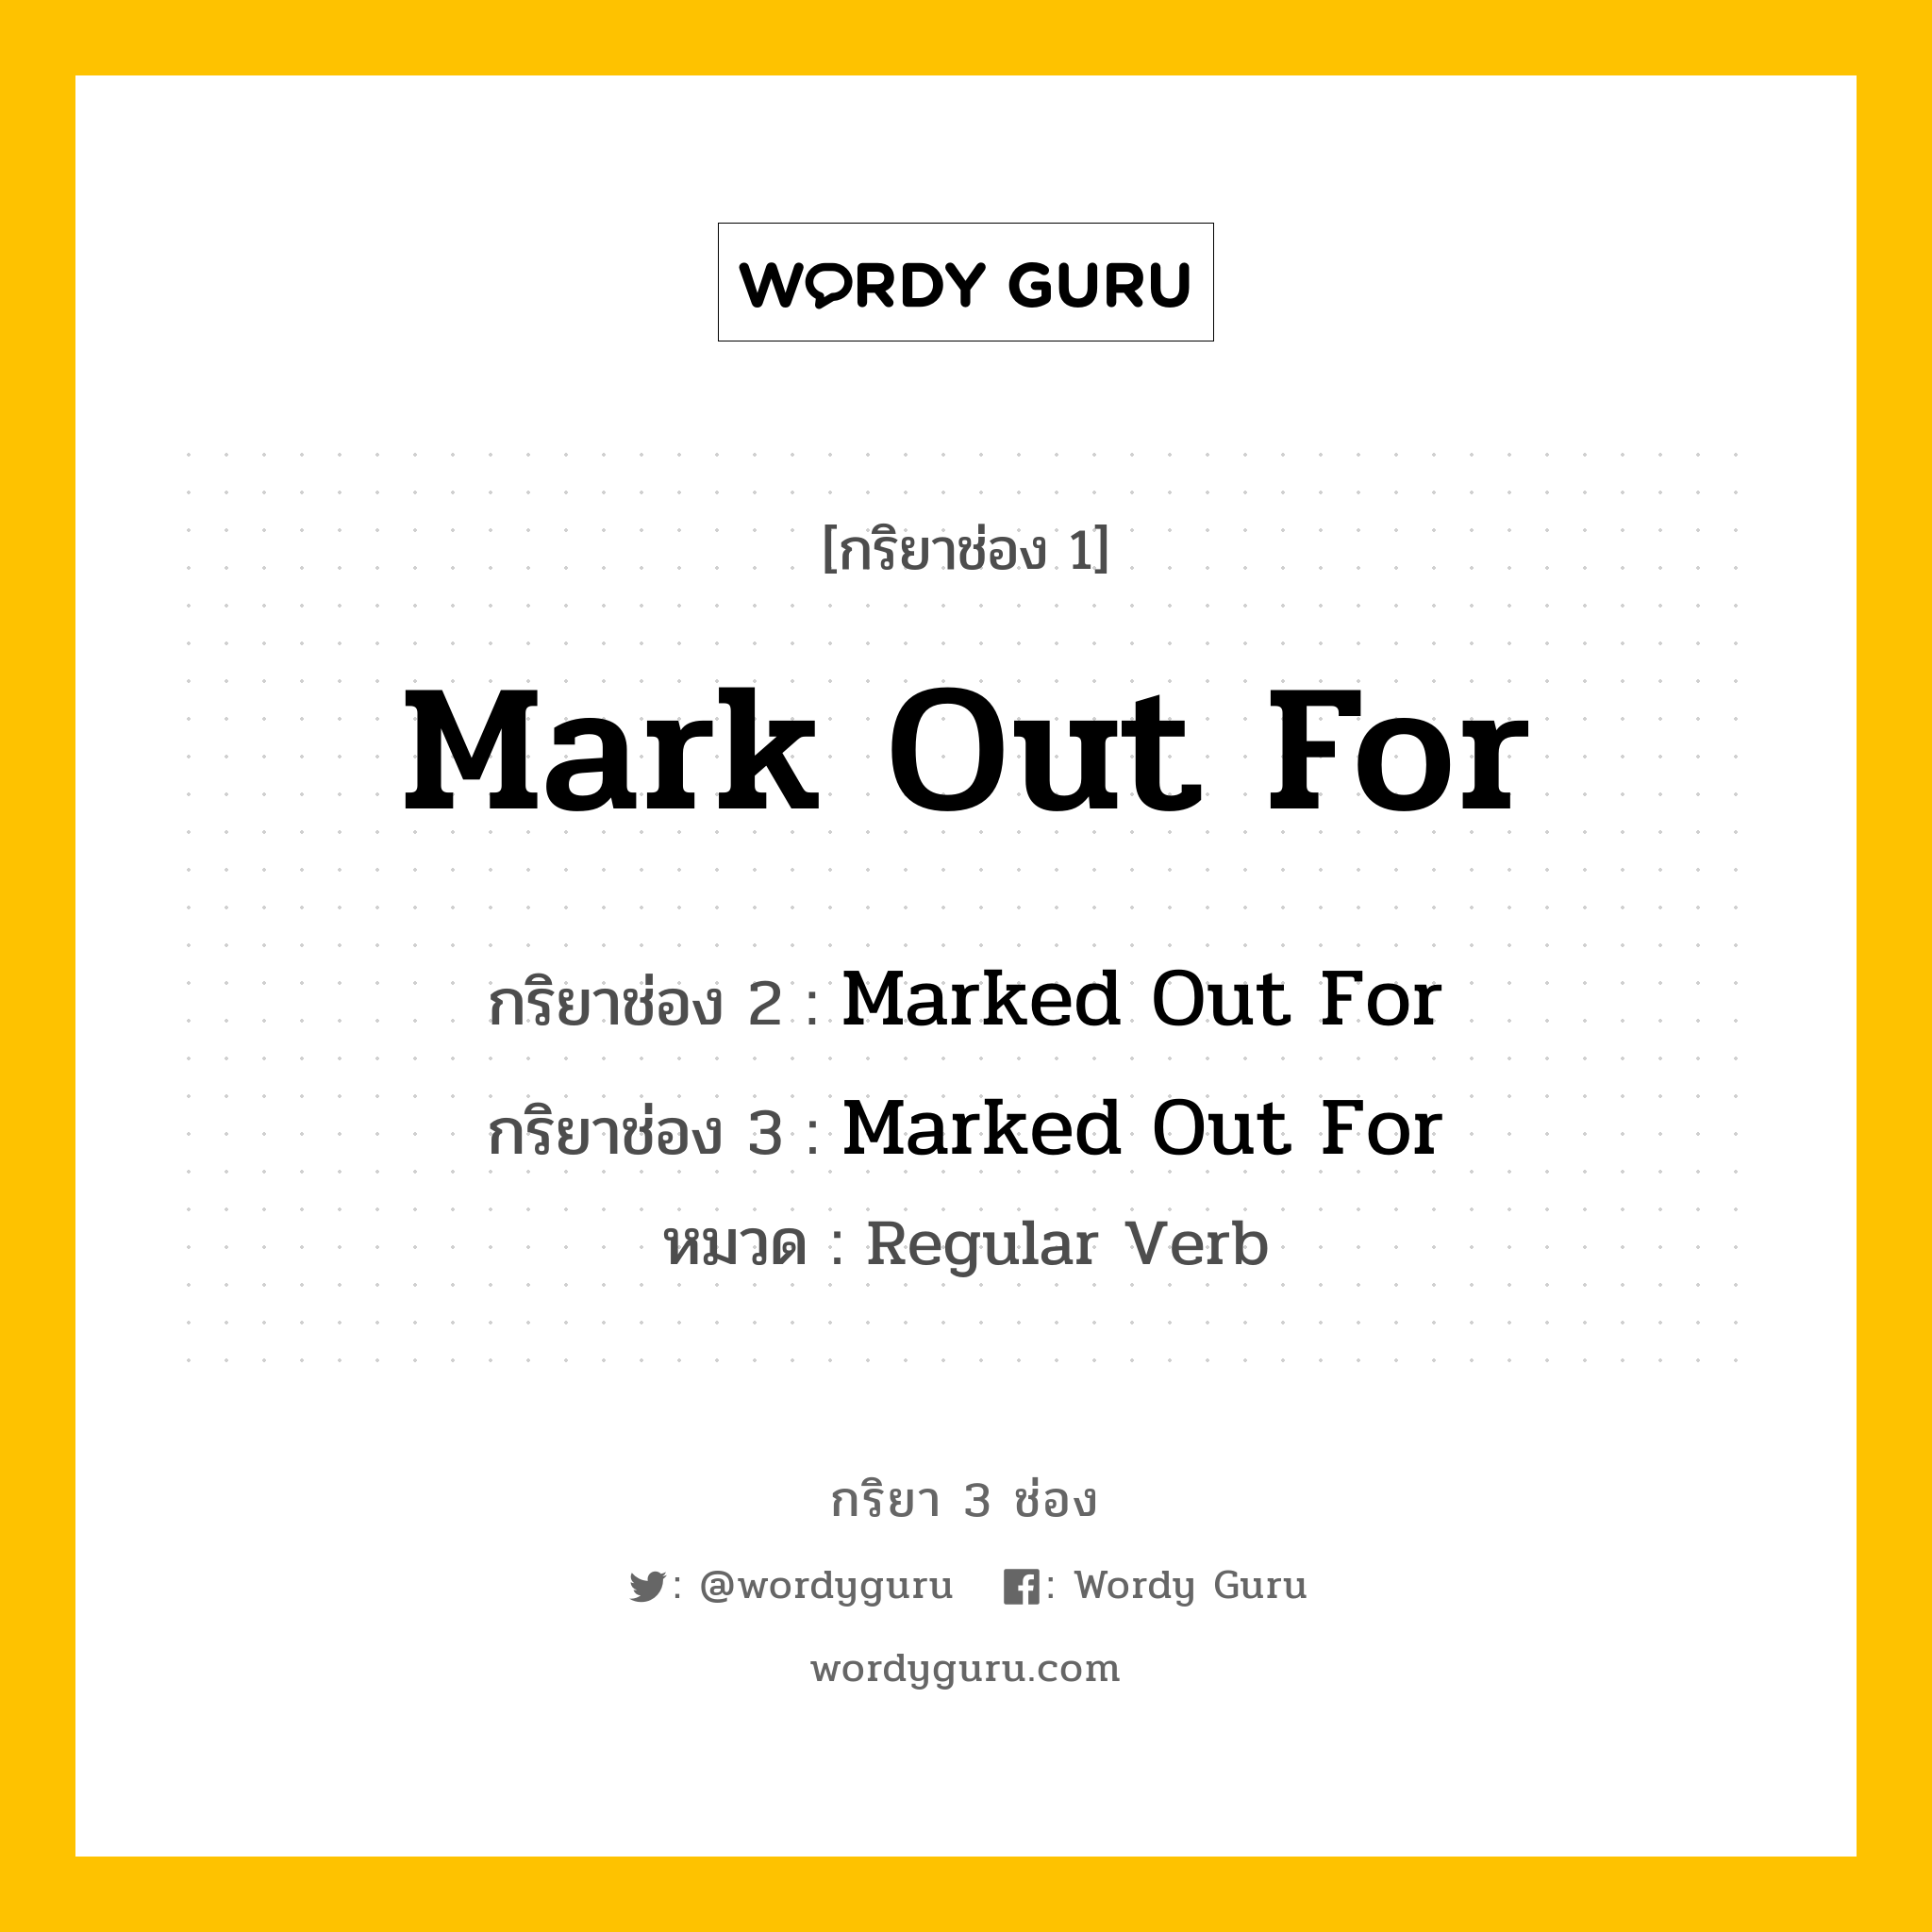 กริยา 3 ช่อง: Mark Out For ช่อง 2 Mark Out For ช่อง 3 คืออะไร, กริยาช่อง 1 Mark Out For กริยาช่อง 2 Marked Out For กริยาช่อง 3 Marked Out For หมวด Regular Verb หมวด Regular Verb